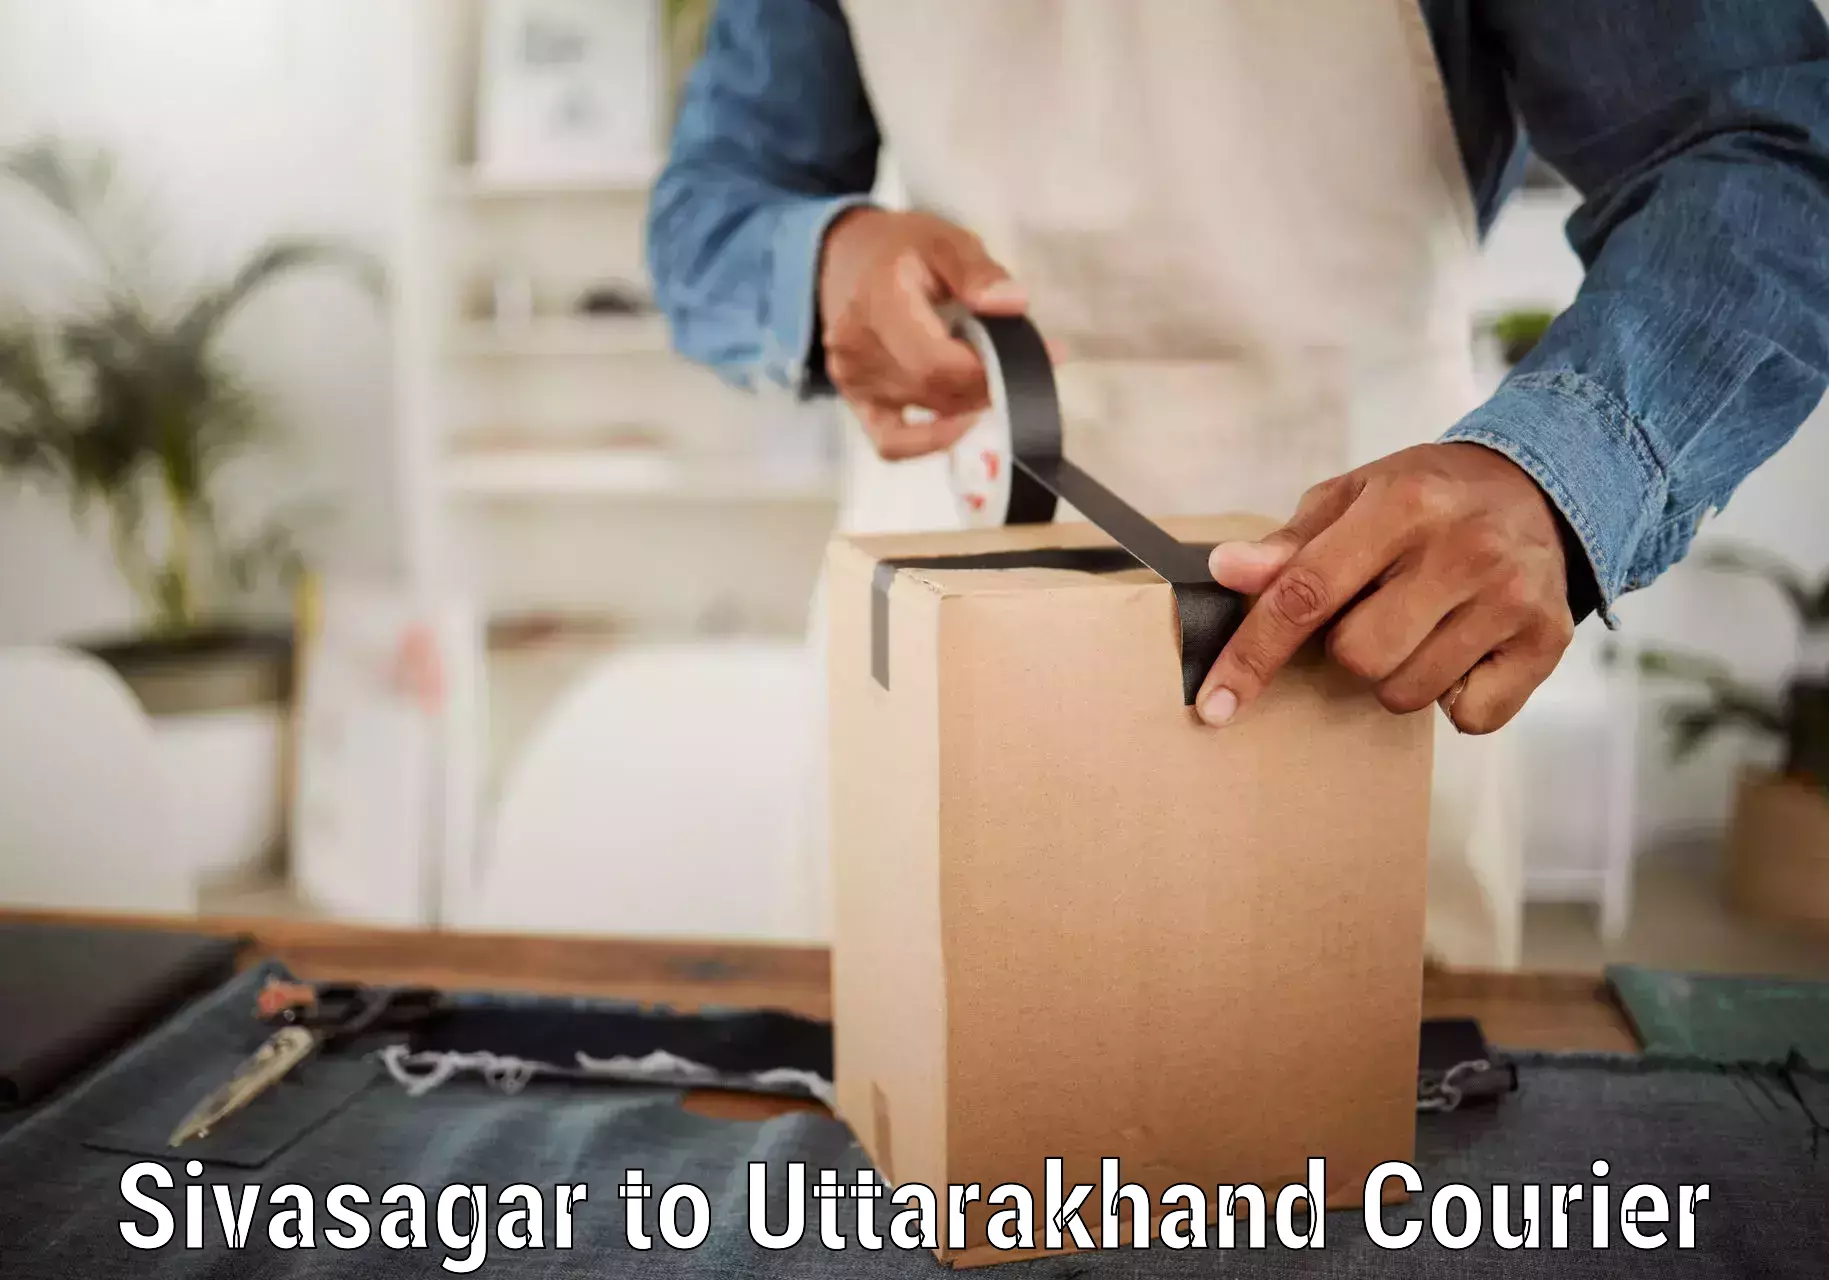 Professional courier services Sivasagar to Rudraprayag